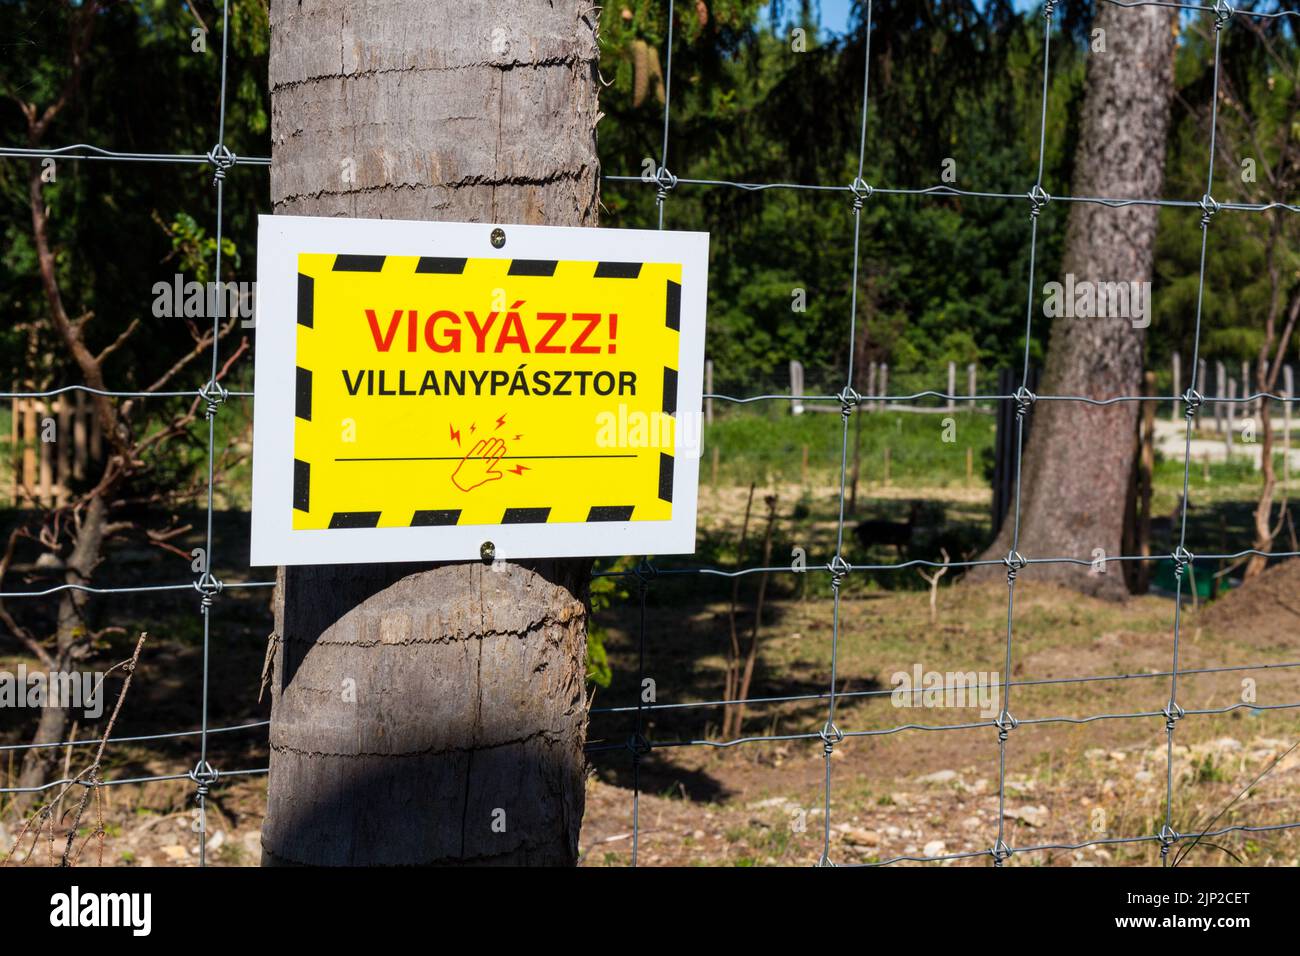 Warning sign on electric fence, ERDO HAZA Okoturisztikai Latogatokozpont es Vadaspark, Muck, Sopron, Hungary Stock Photo